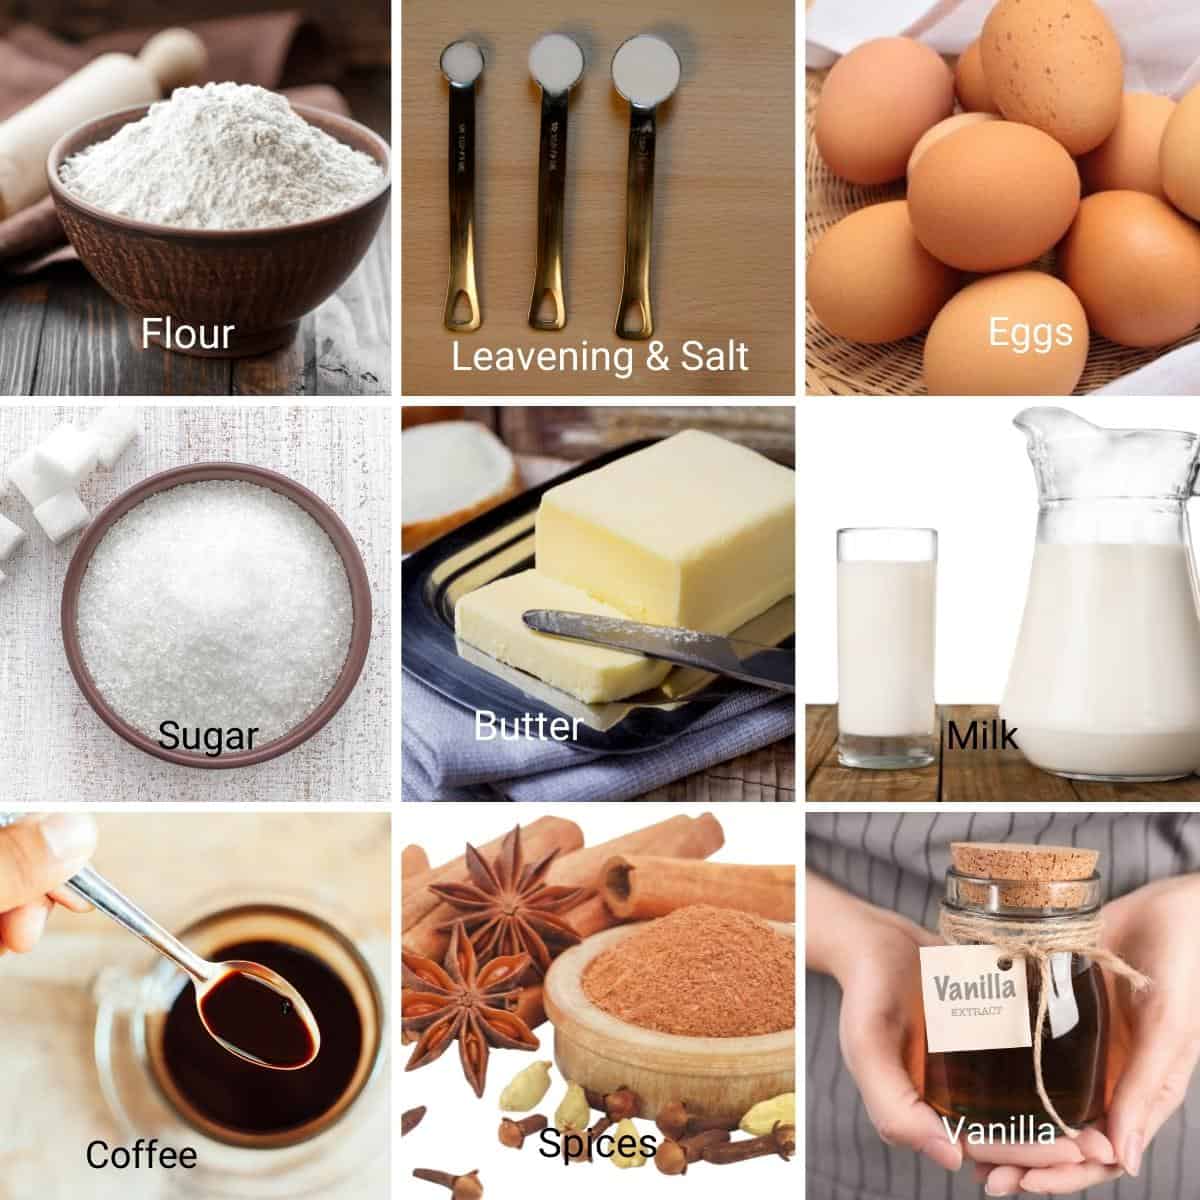 Ingredients for making vanilla cafe latte cake.